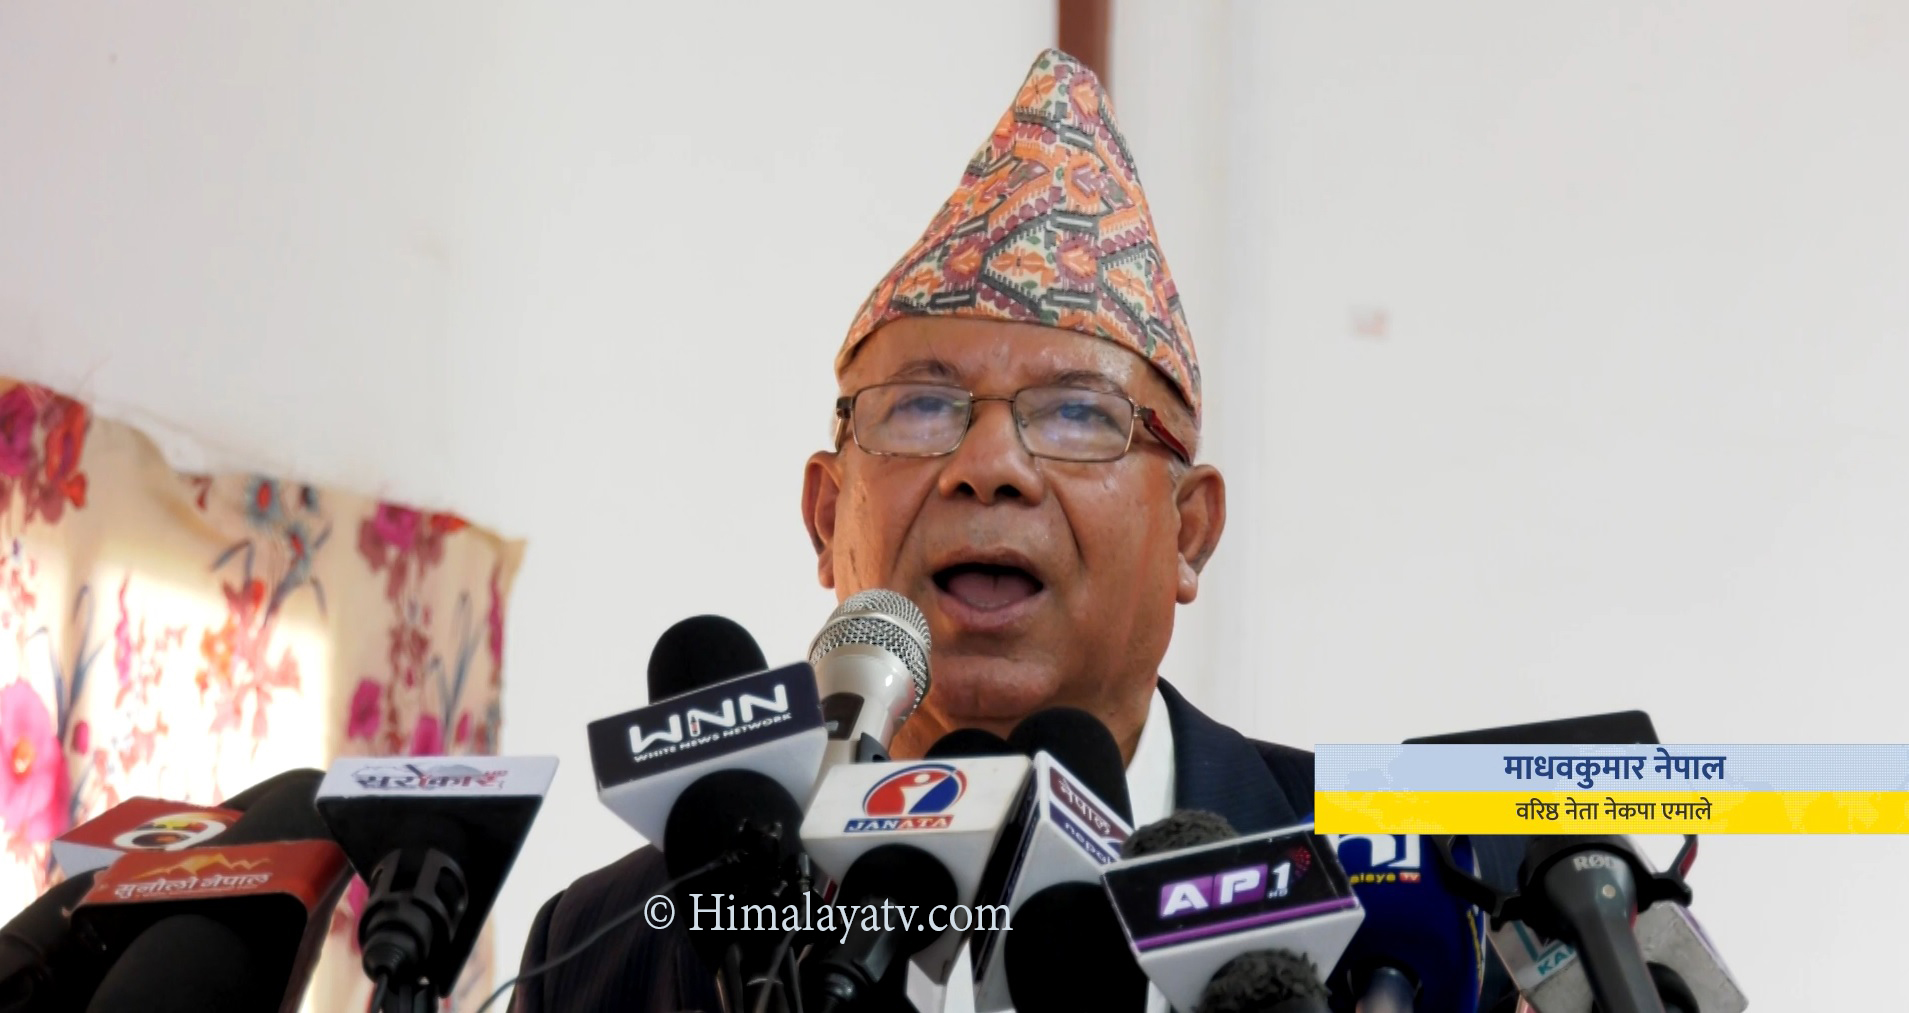 ‘म सबैथोक जान्ने सर्वज्ञानी हुँ’ भन्ने अहंकारले पार्टीमा समस्या भयोः नेता नेपाल (भिडियो रिपोर्टसहित)